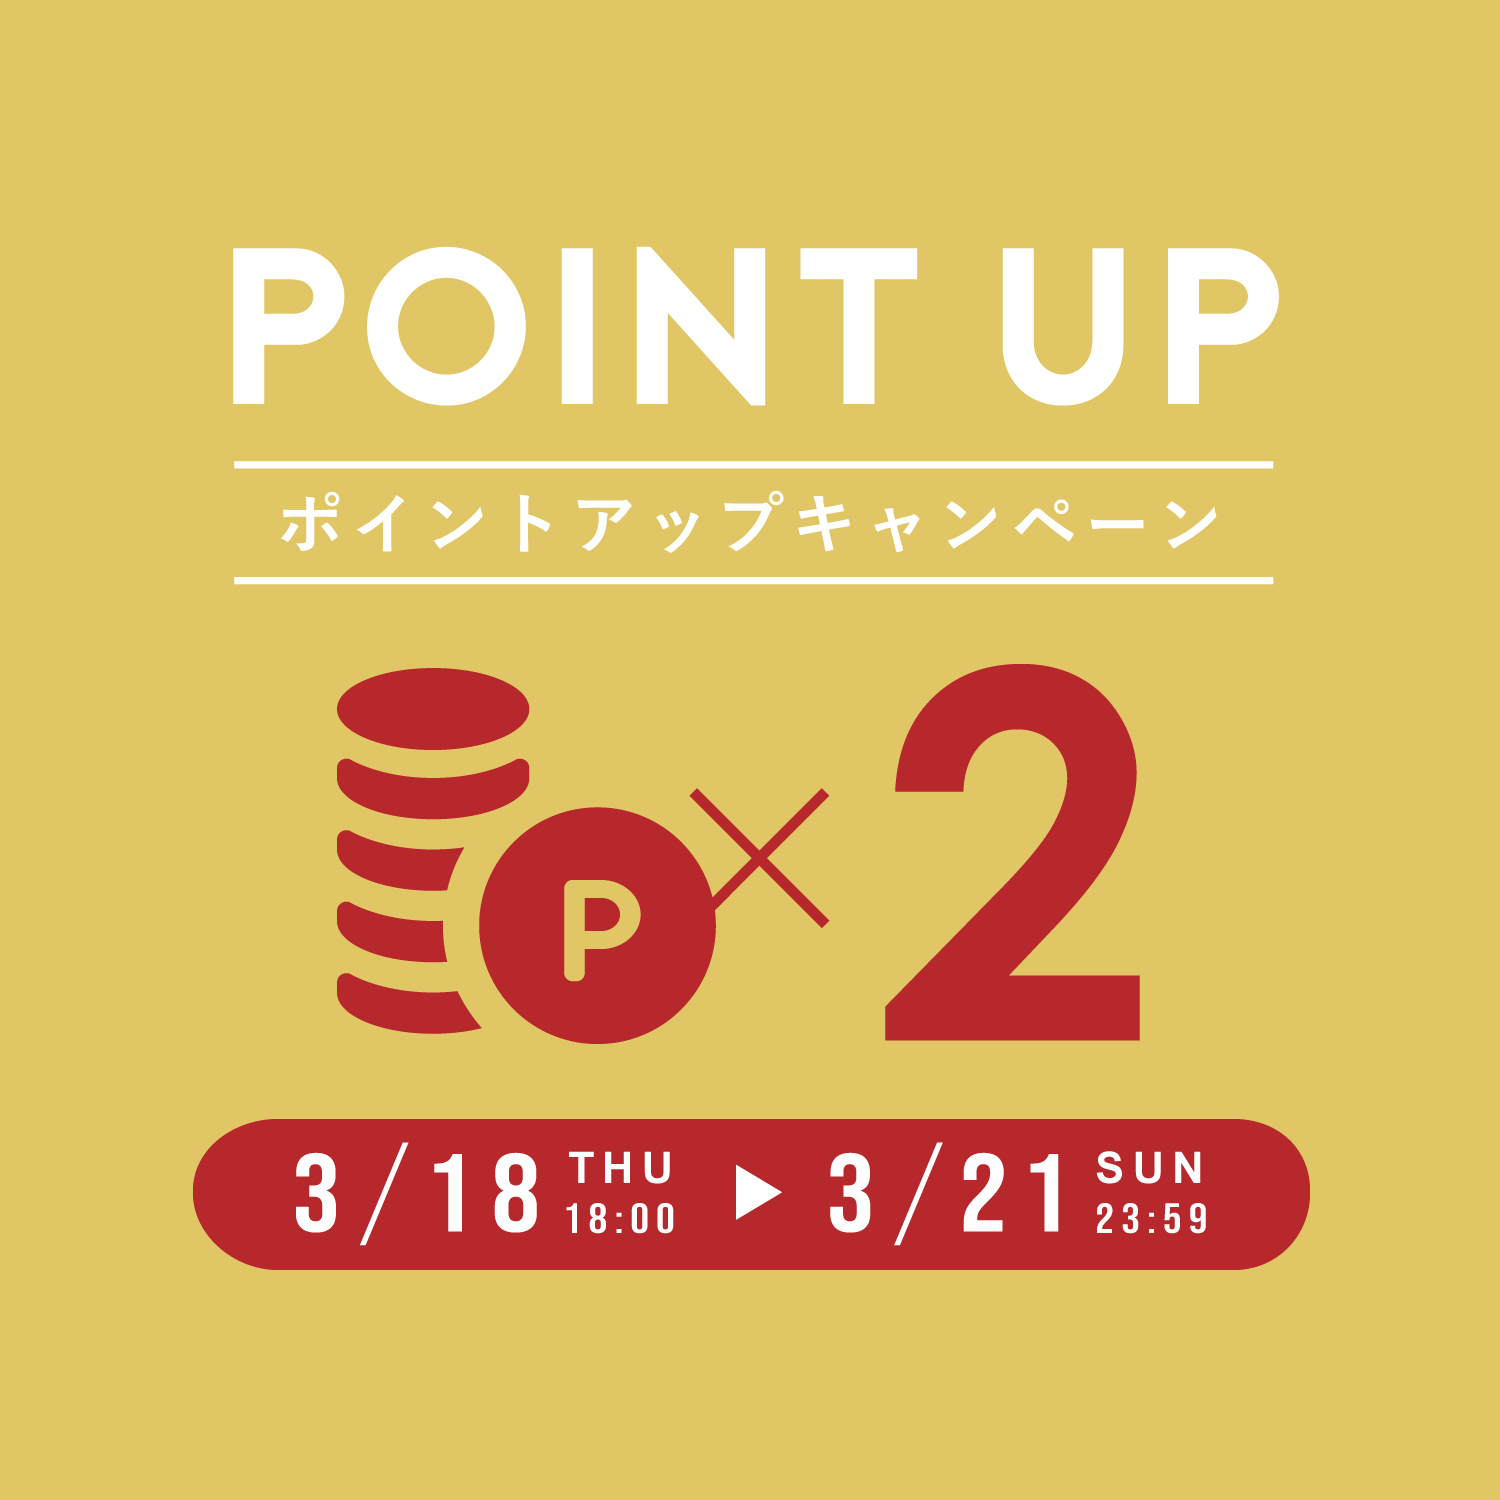 ポイントアップキャンペーン / 3月21日までポイント2倍 | CAMPAIGN | Crisp(クリスプ)ONLINE SHOP